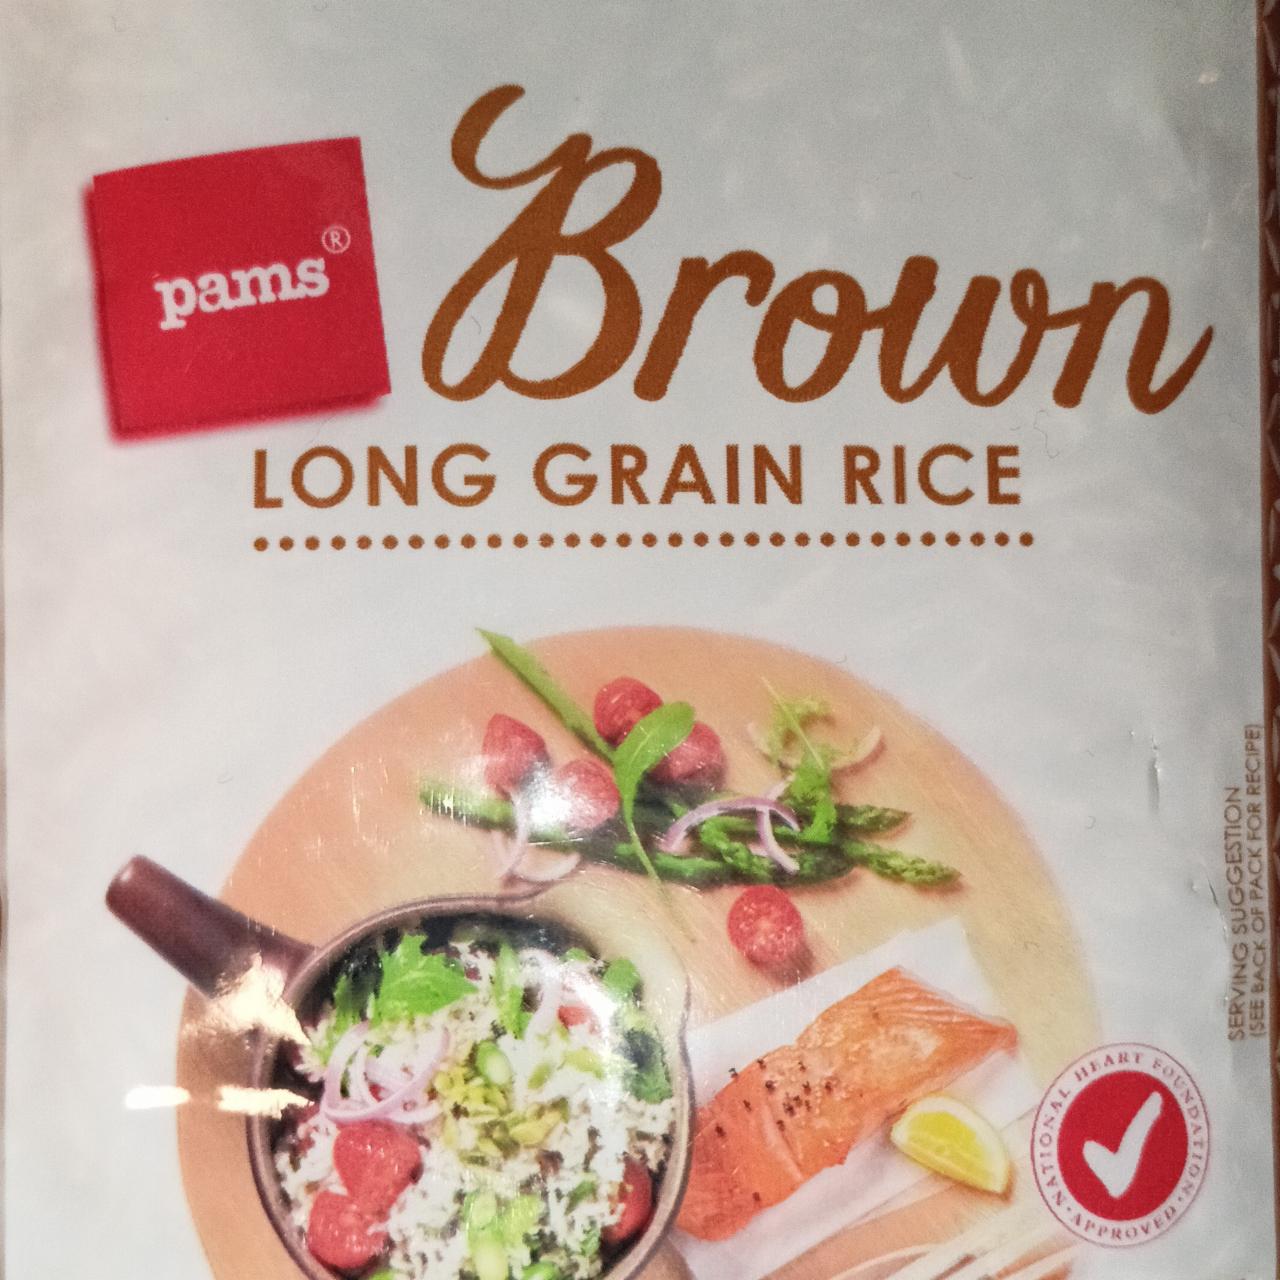 Fotografie - Brown Long Grain Rice Pams